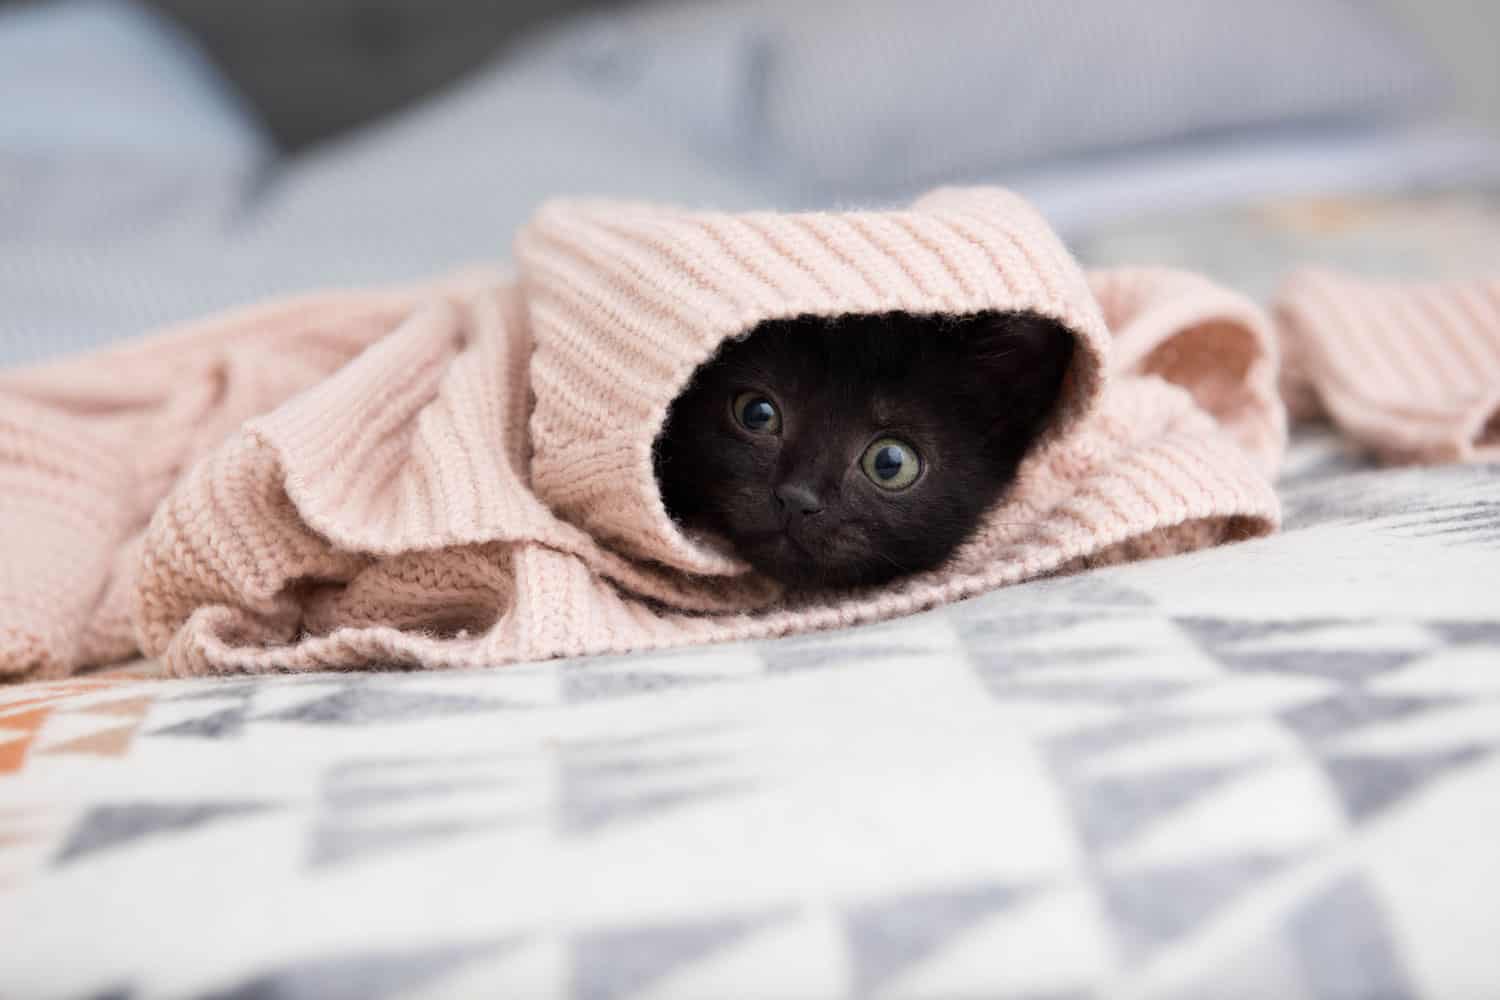 Black Kitten Hiding in Pink Sweater
